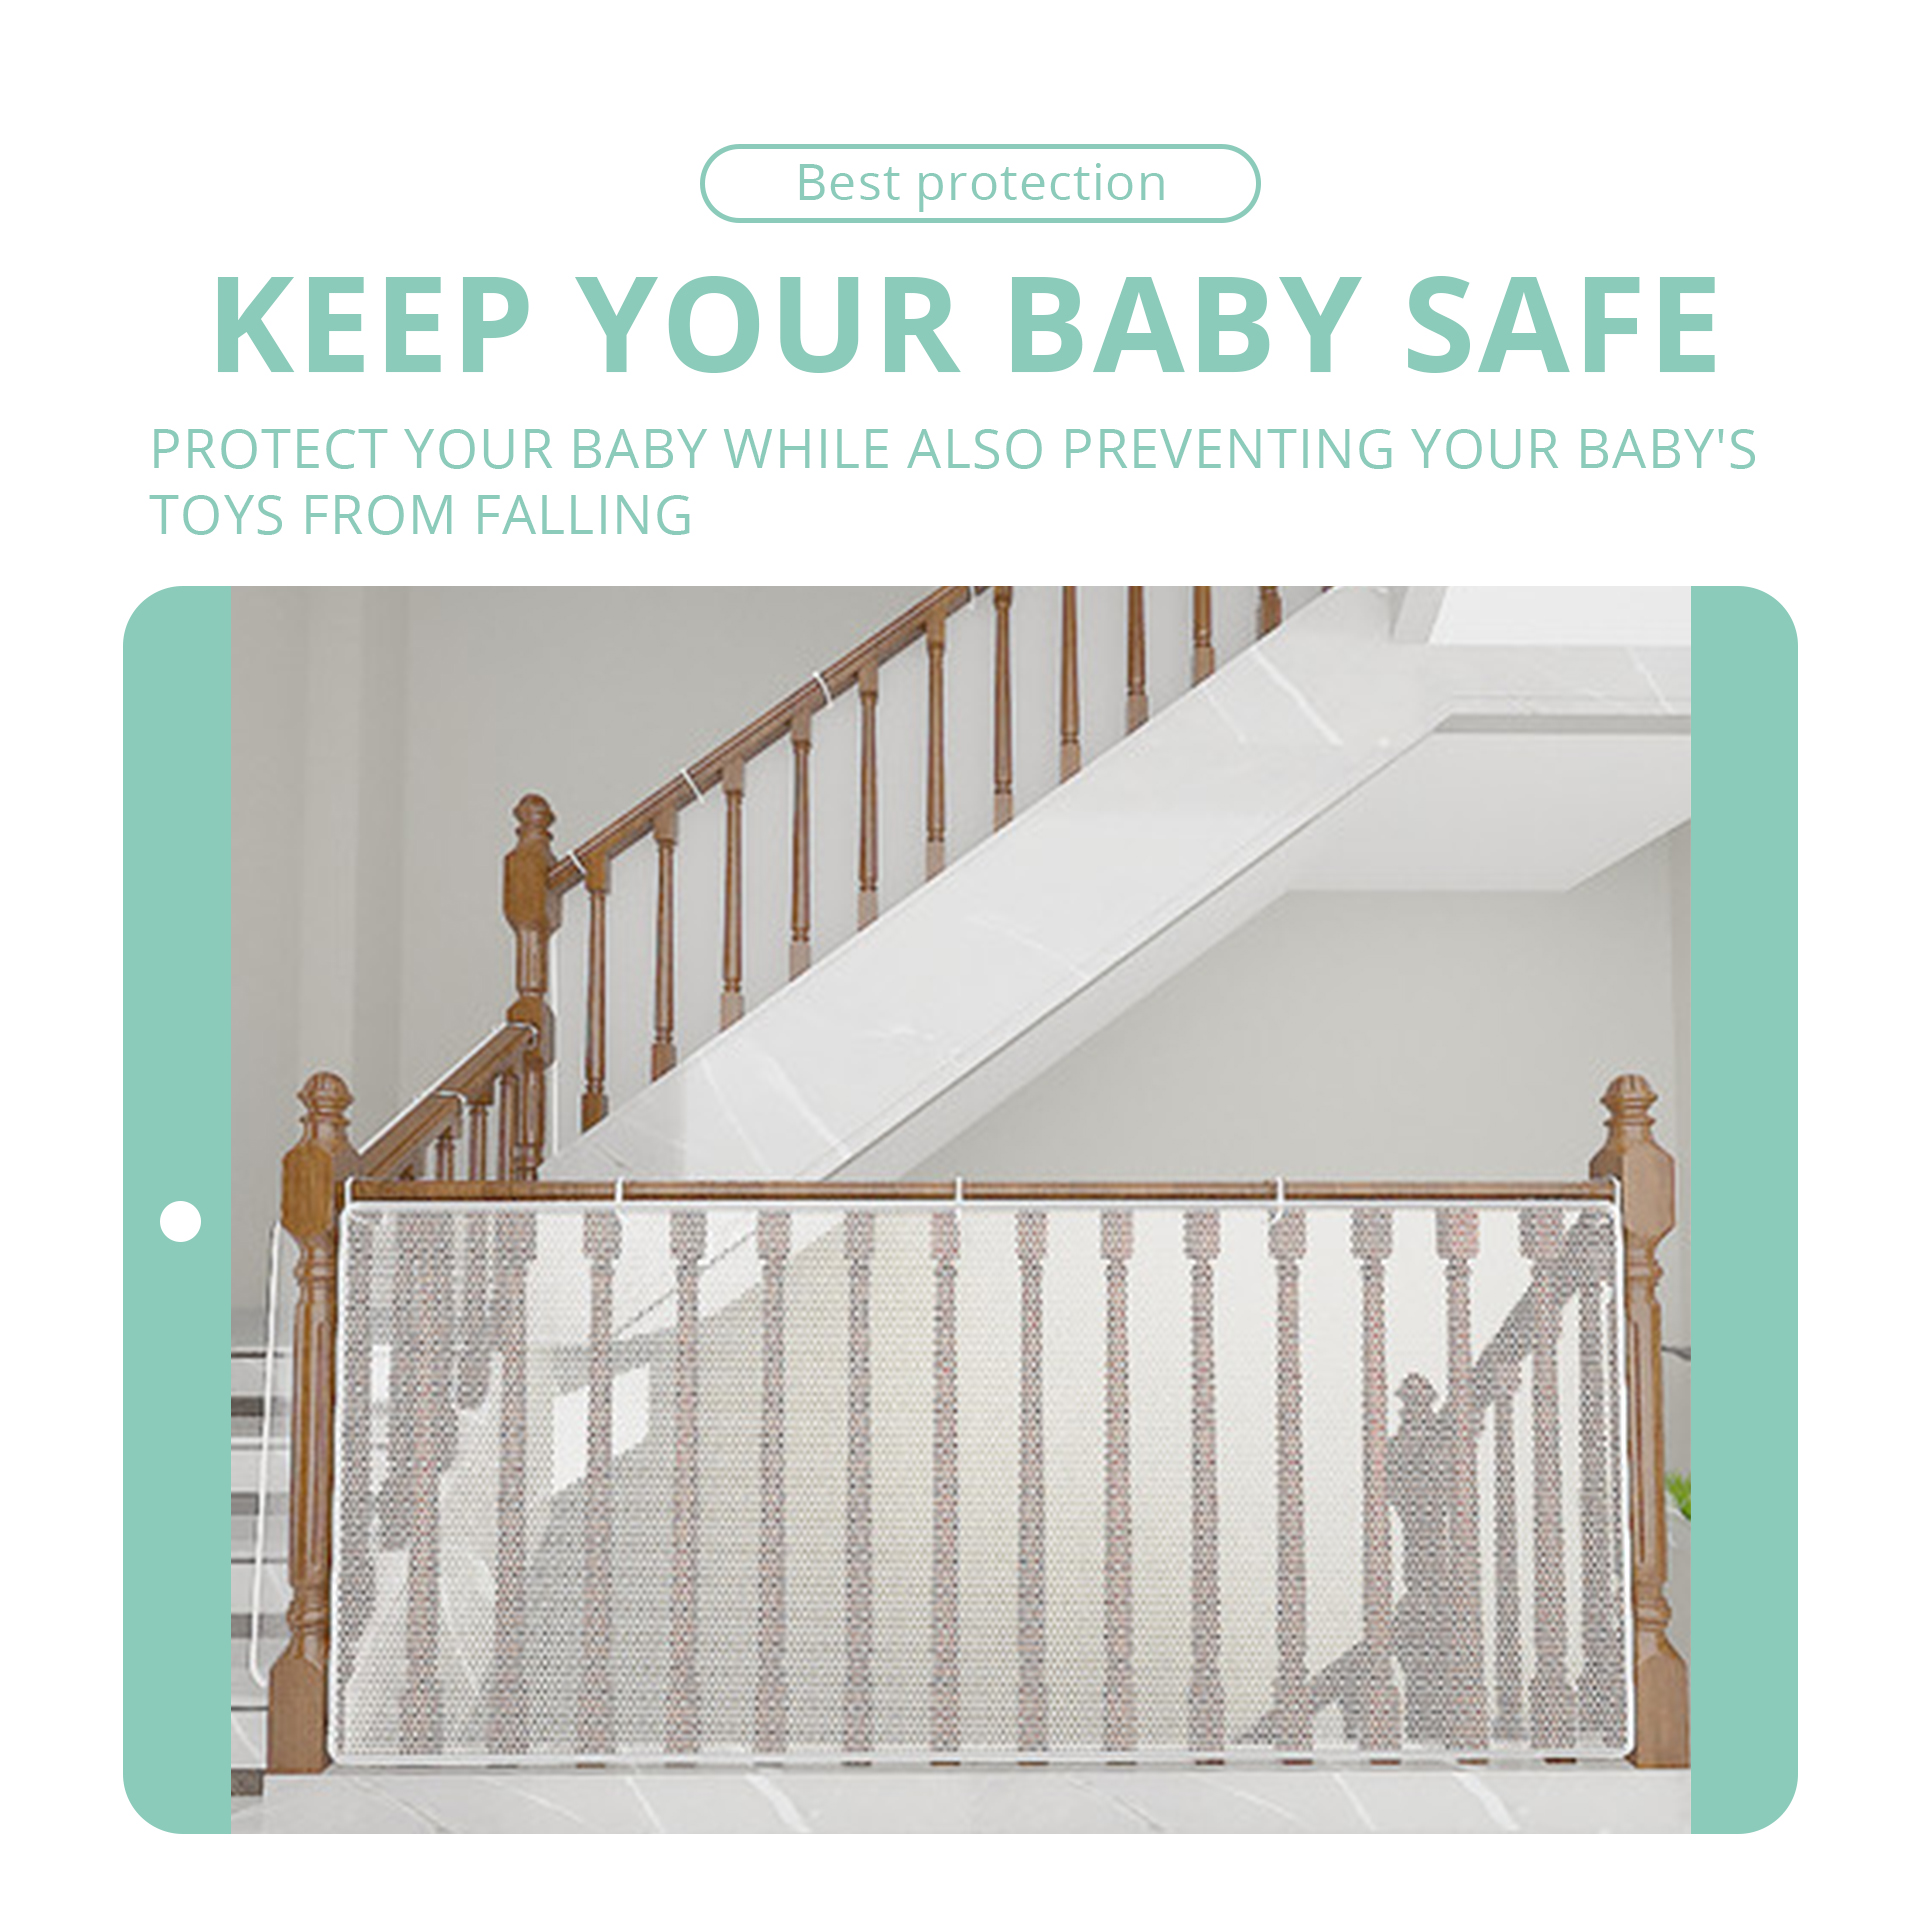 Cubierta protectora para escalera de bebé para evitar que las extremidades se atasquen, evitar que los juguetes se caigan, barandilla protectora para balcón, escalera protectora Dec